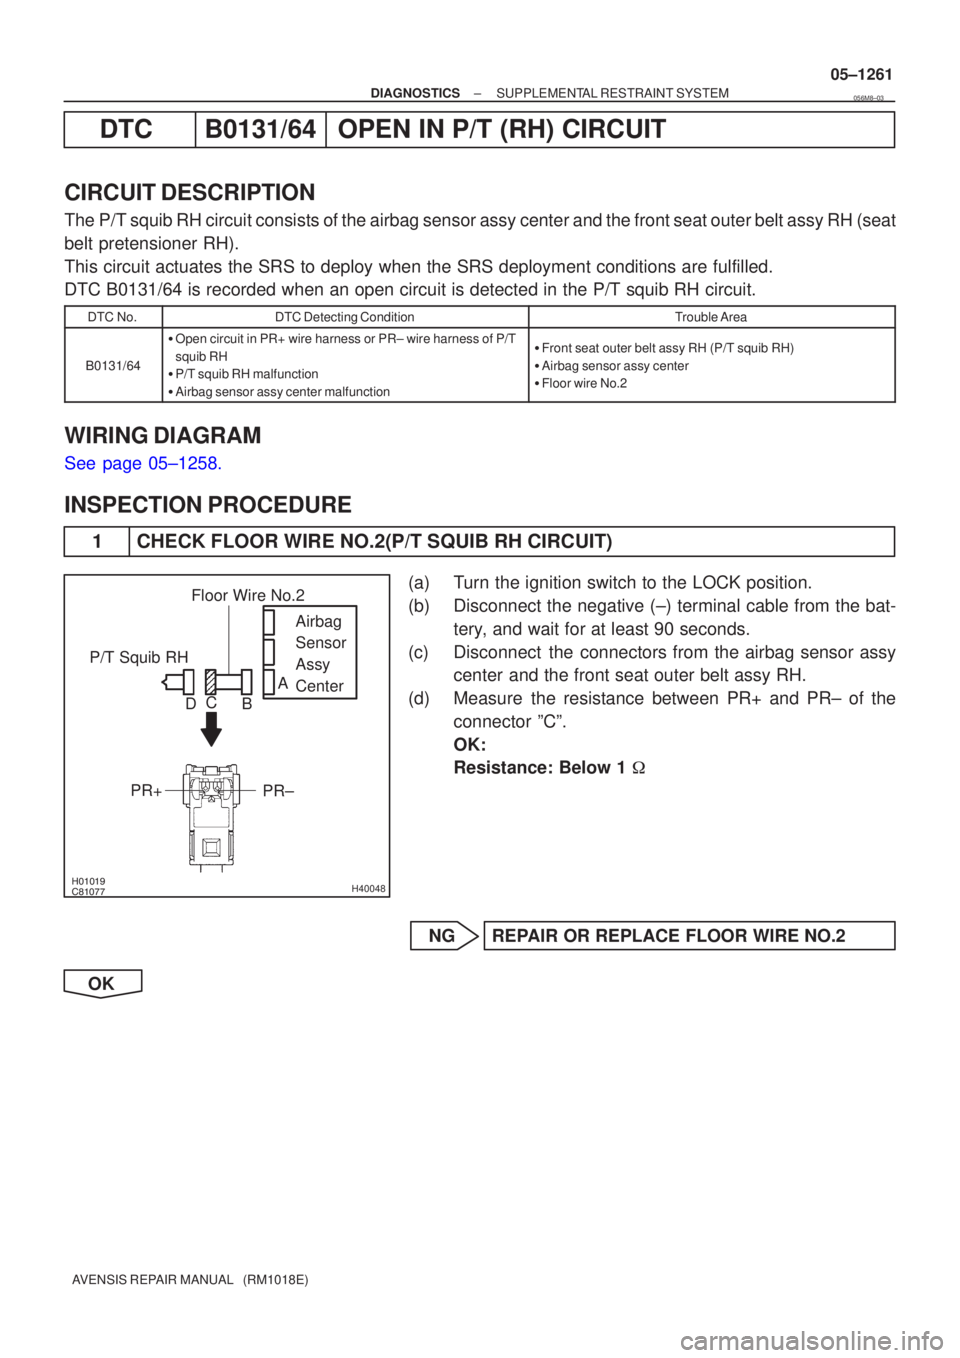 TOYOTA AVENSIS 2005  Service Repair Manual H40048
P/T Squib RHAirbag
Sensor
Assy
Center
PR±
PR+
Floor Wire No.2
A
B
C
D
±
DIAGNOSTICS SUPPLEMENTAL RESTRAINT SYSTEM
05±1261
AVENSIS REPAIR MANUAL   (RM1018E)
DTC B0131/64 OPEN IN P